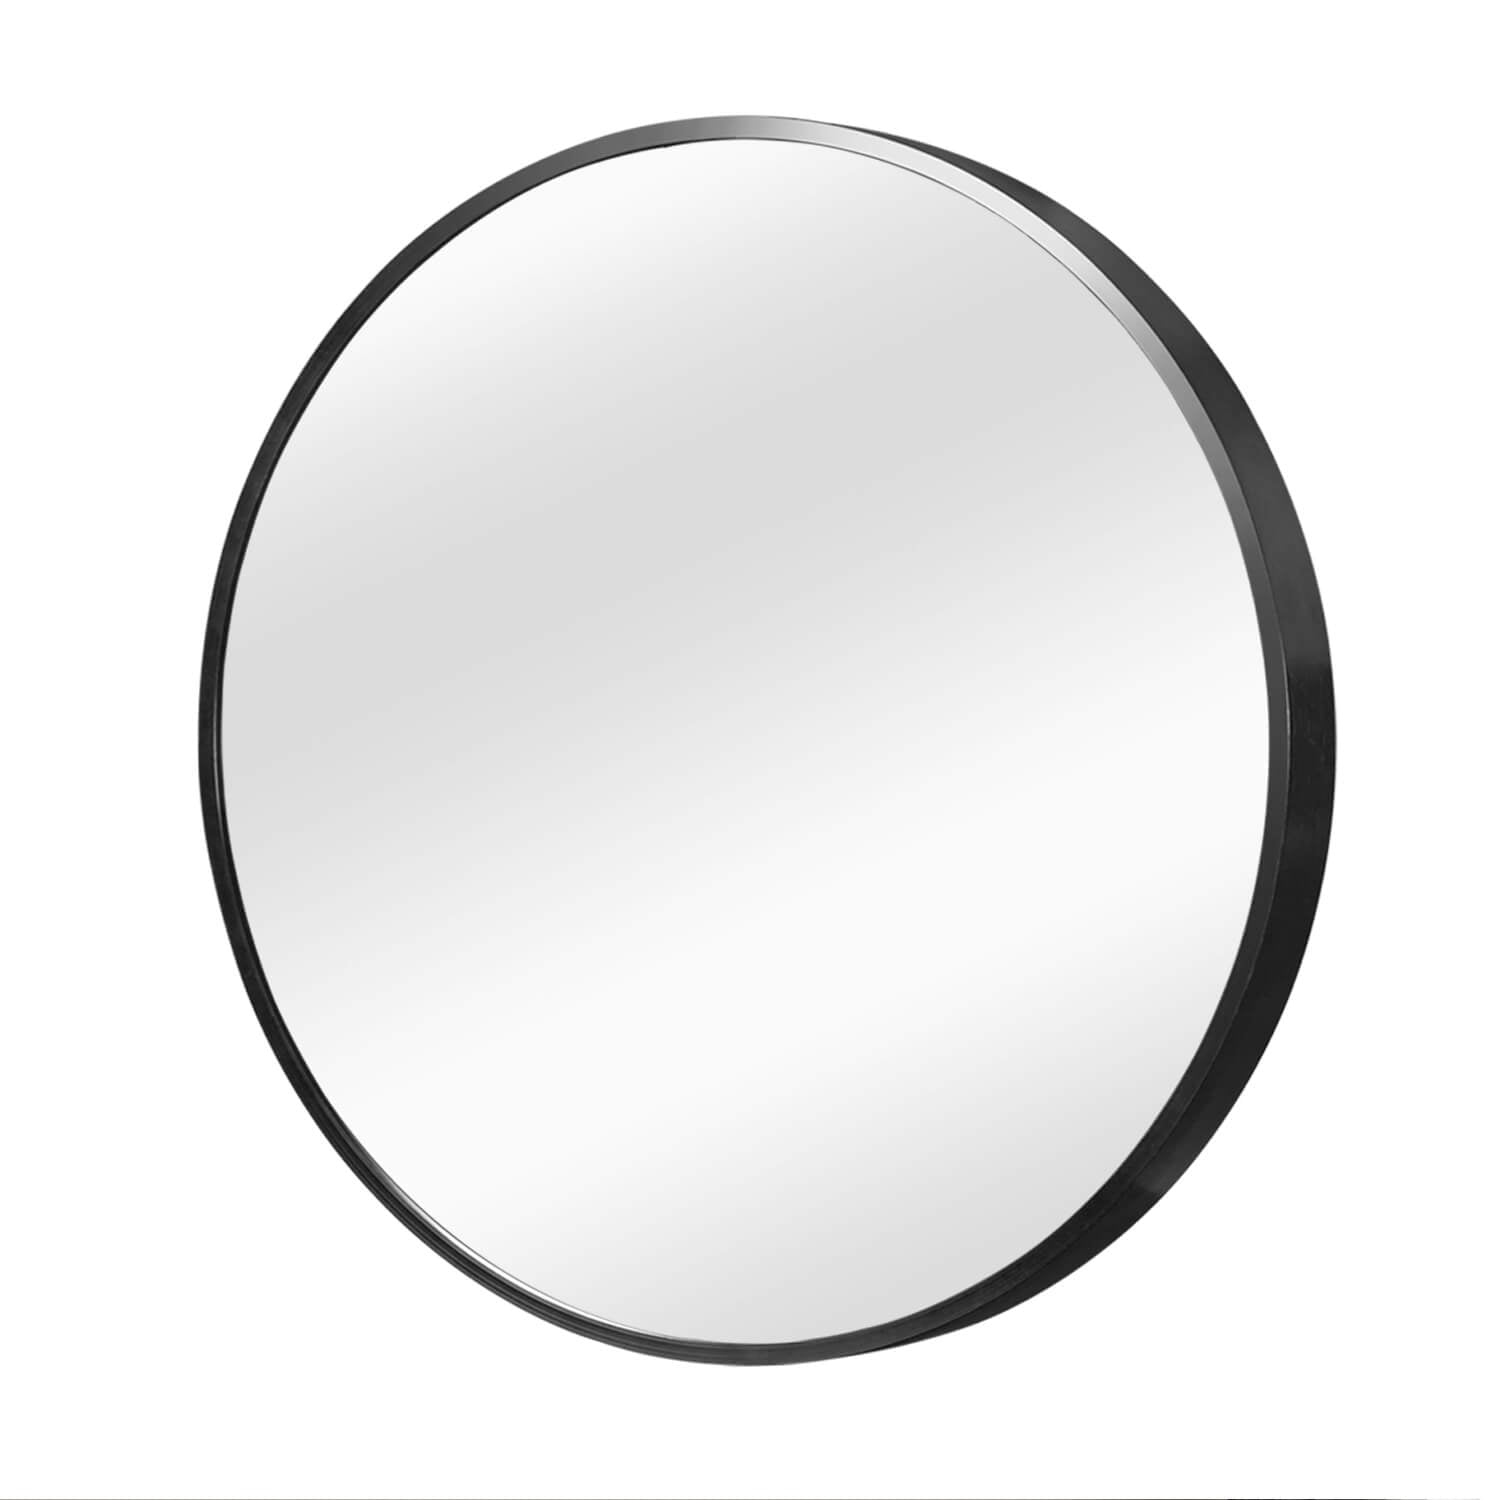 corcular mirror